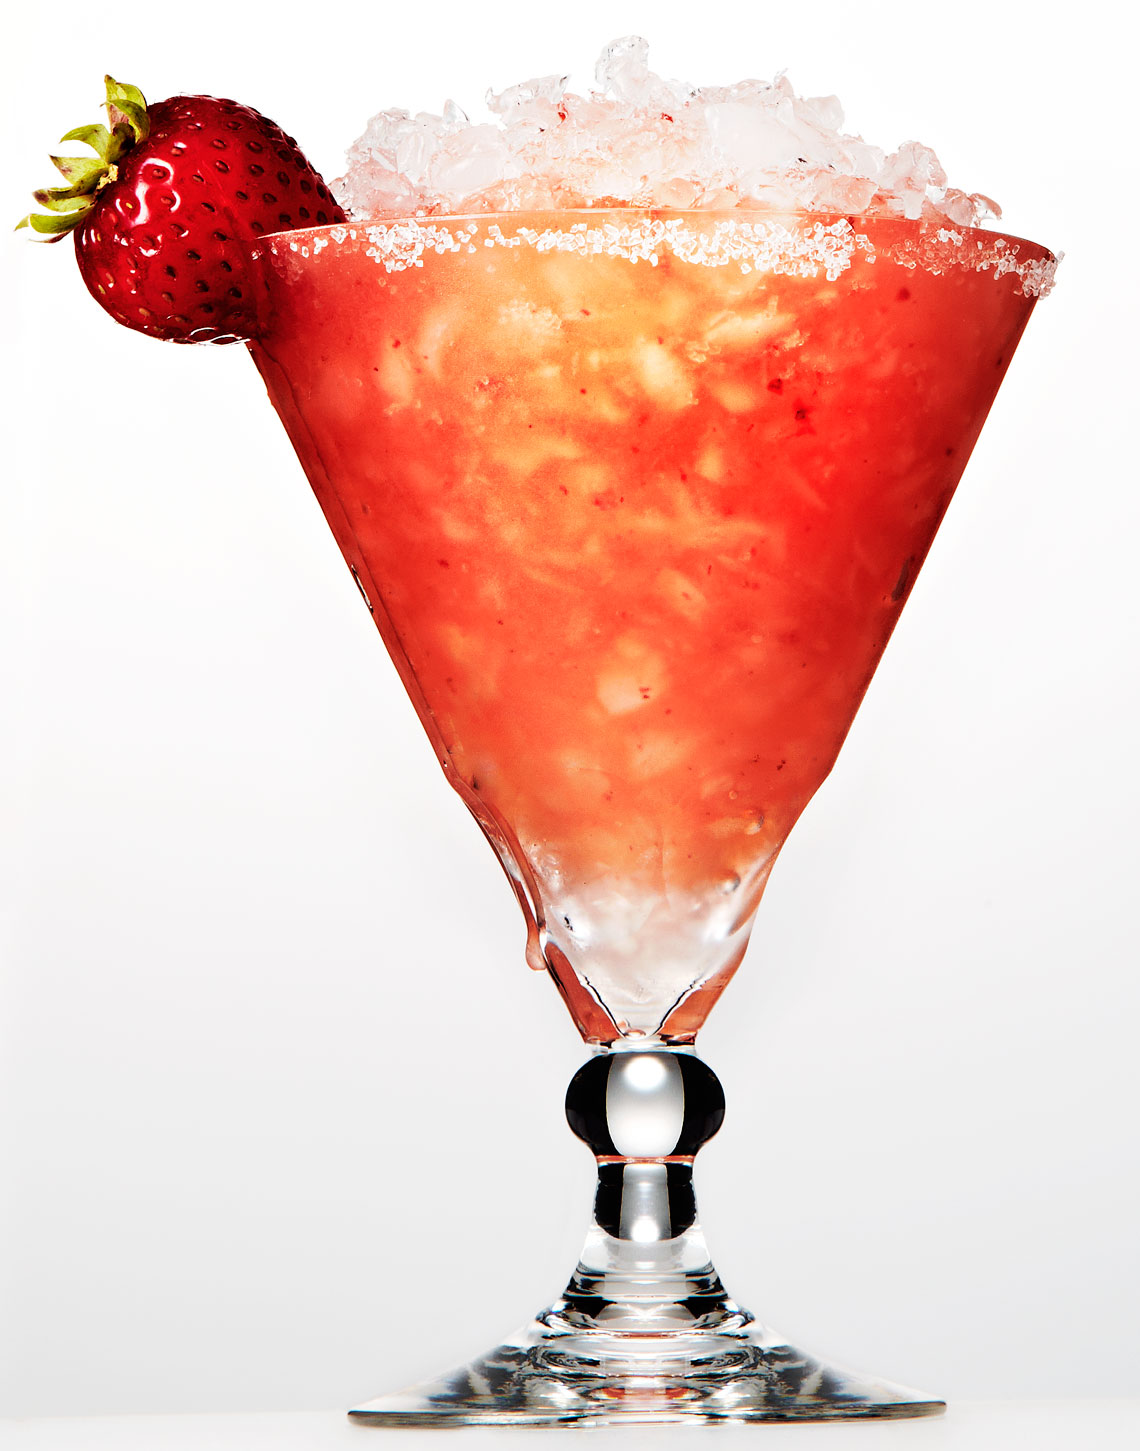 COS-Drink-StrawberryDaquiri-238